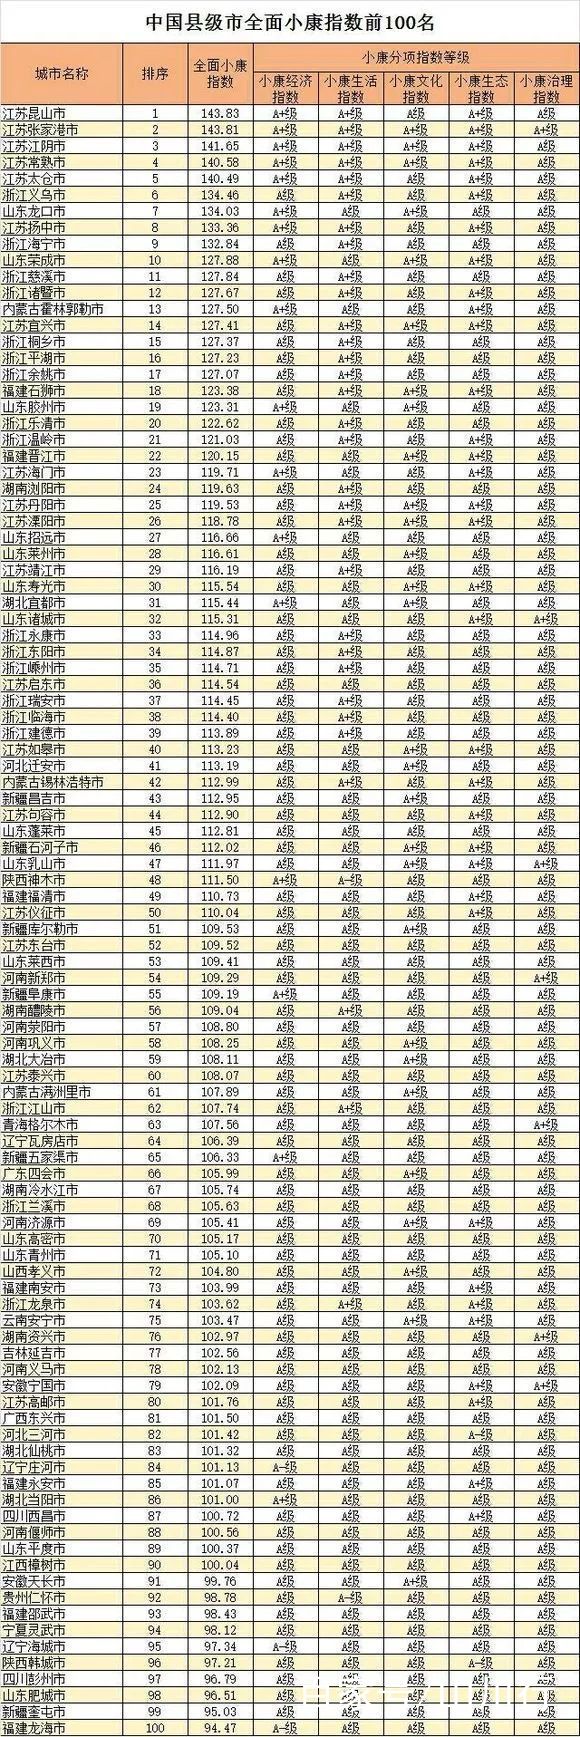 2018年中国地级市、县级市全面小康指数前10